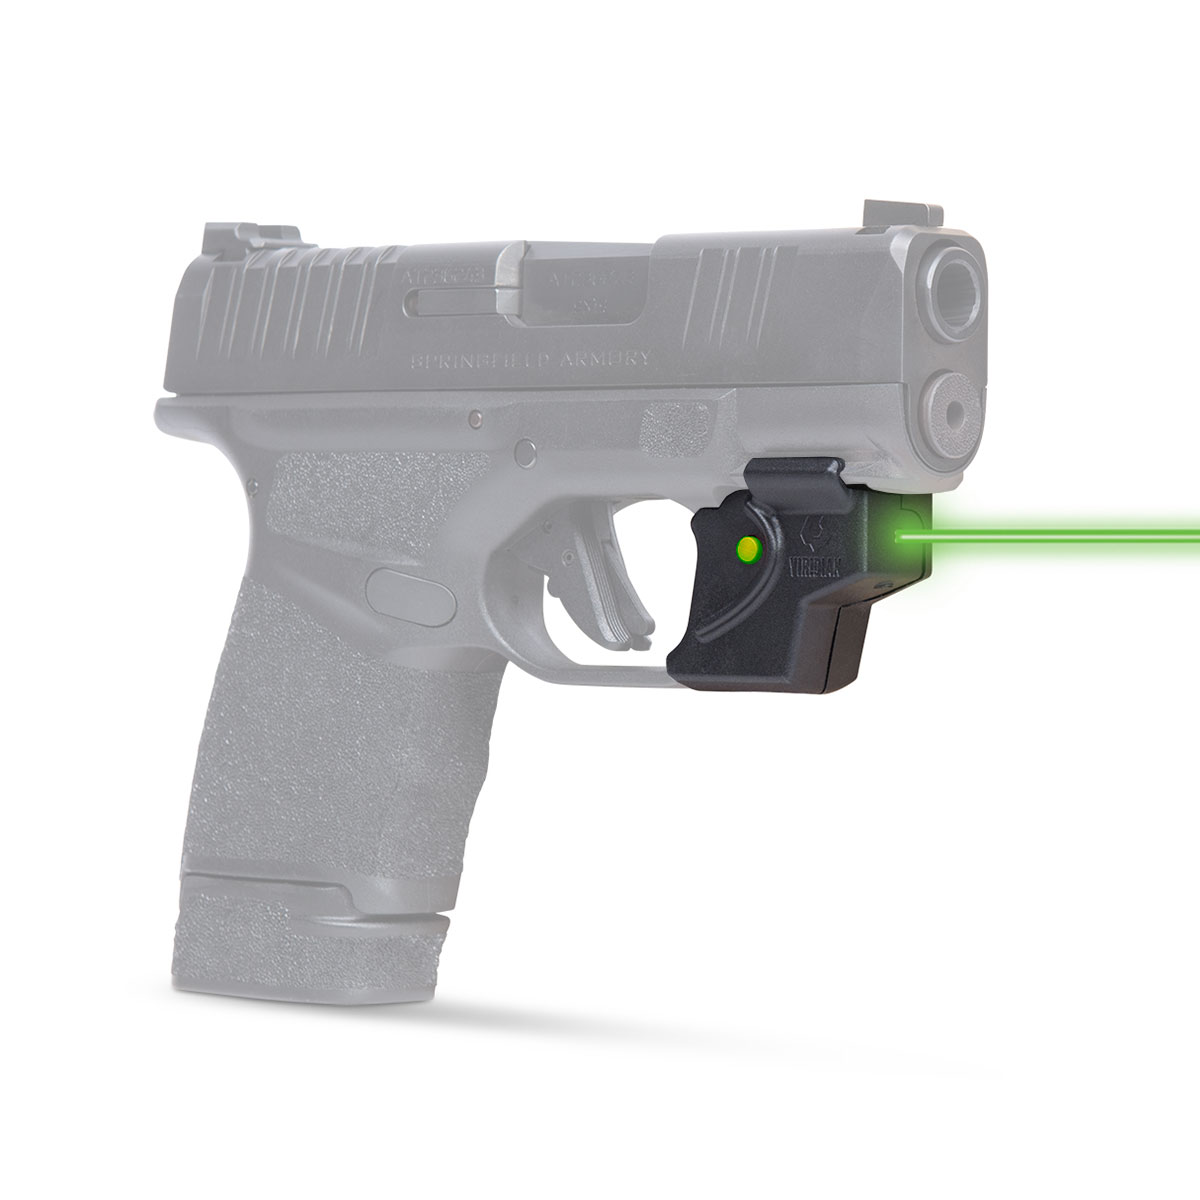 Viridian E-Series Green laser